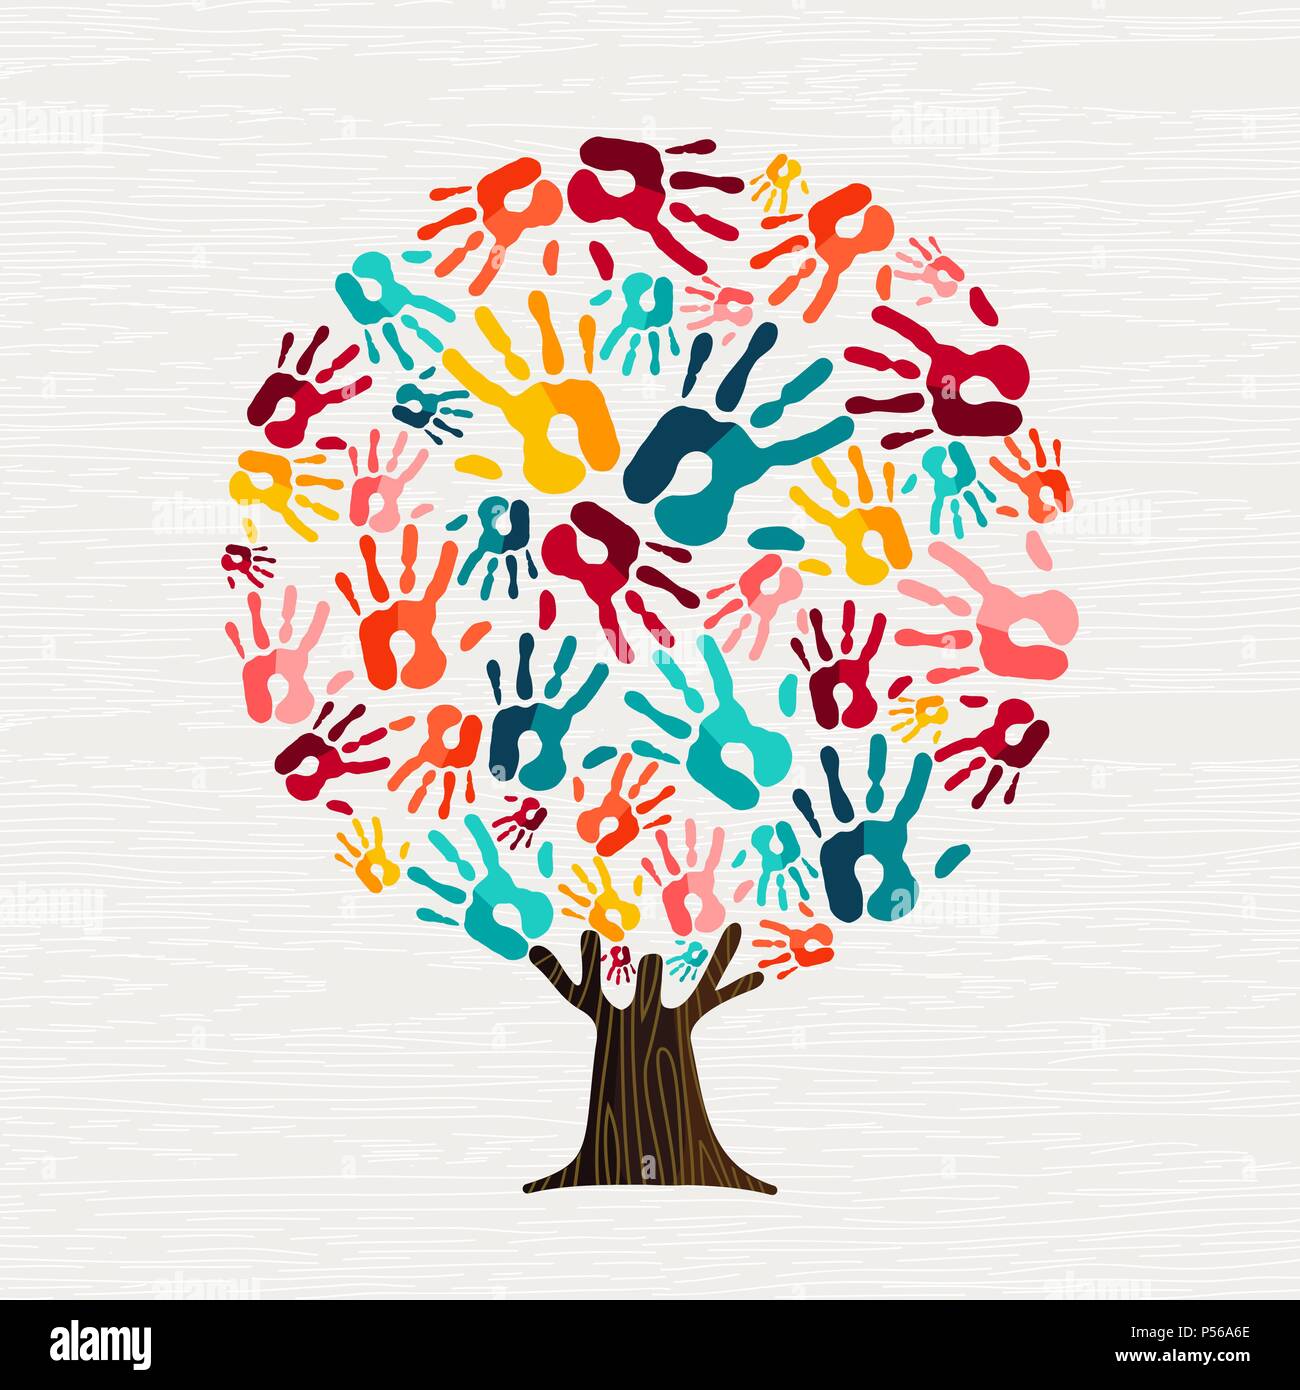 Arborescence constituée de mains humaines colorées dans les branches. Concept d'aide de la Communauté, la diversité de la culture groupe ou projet social. Vecteur EPS10. Illustration de Vecteur